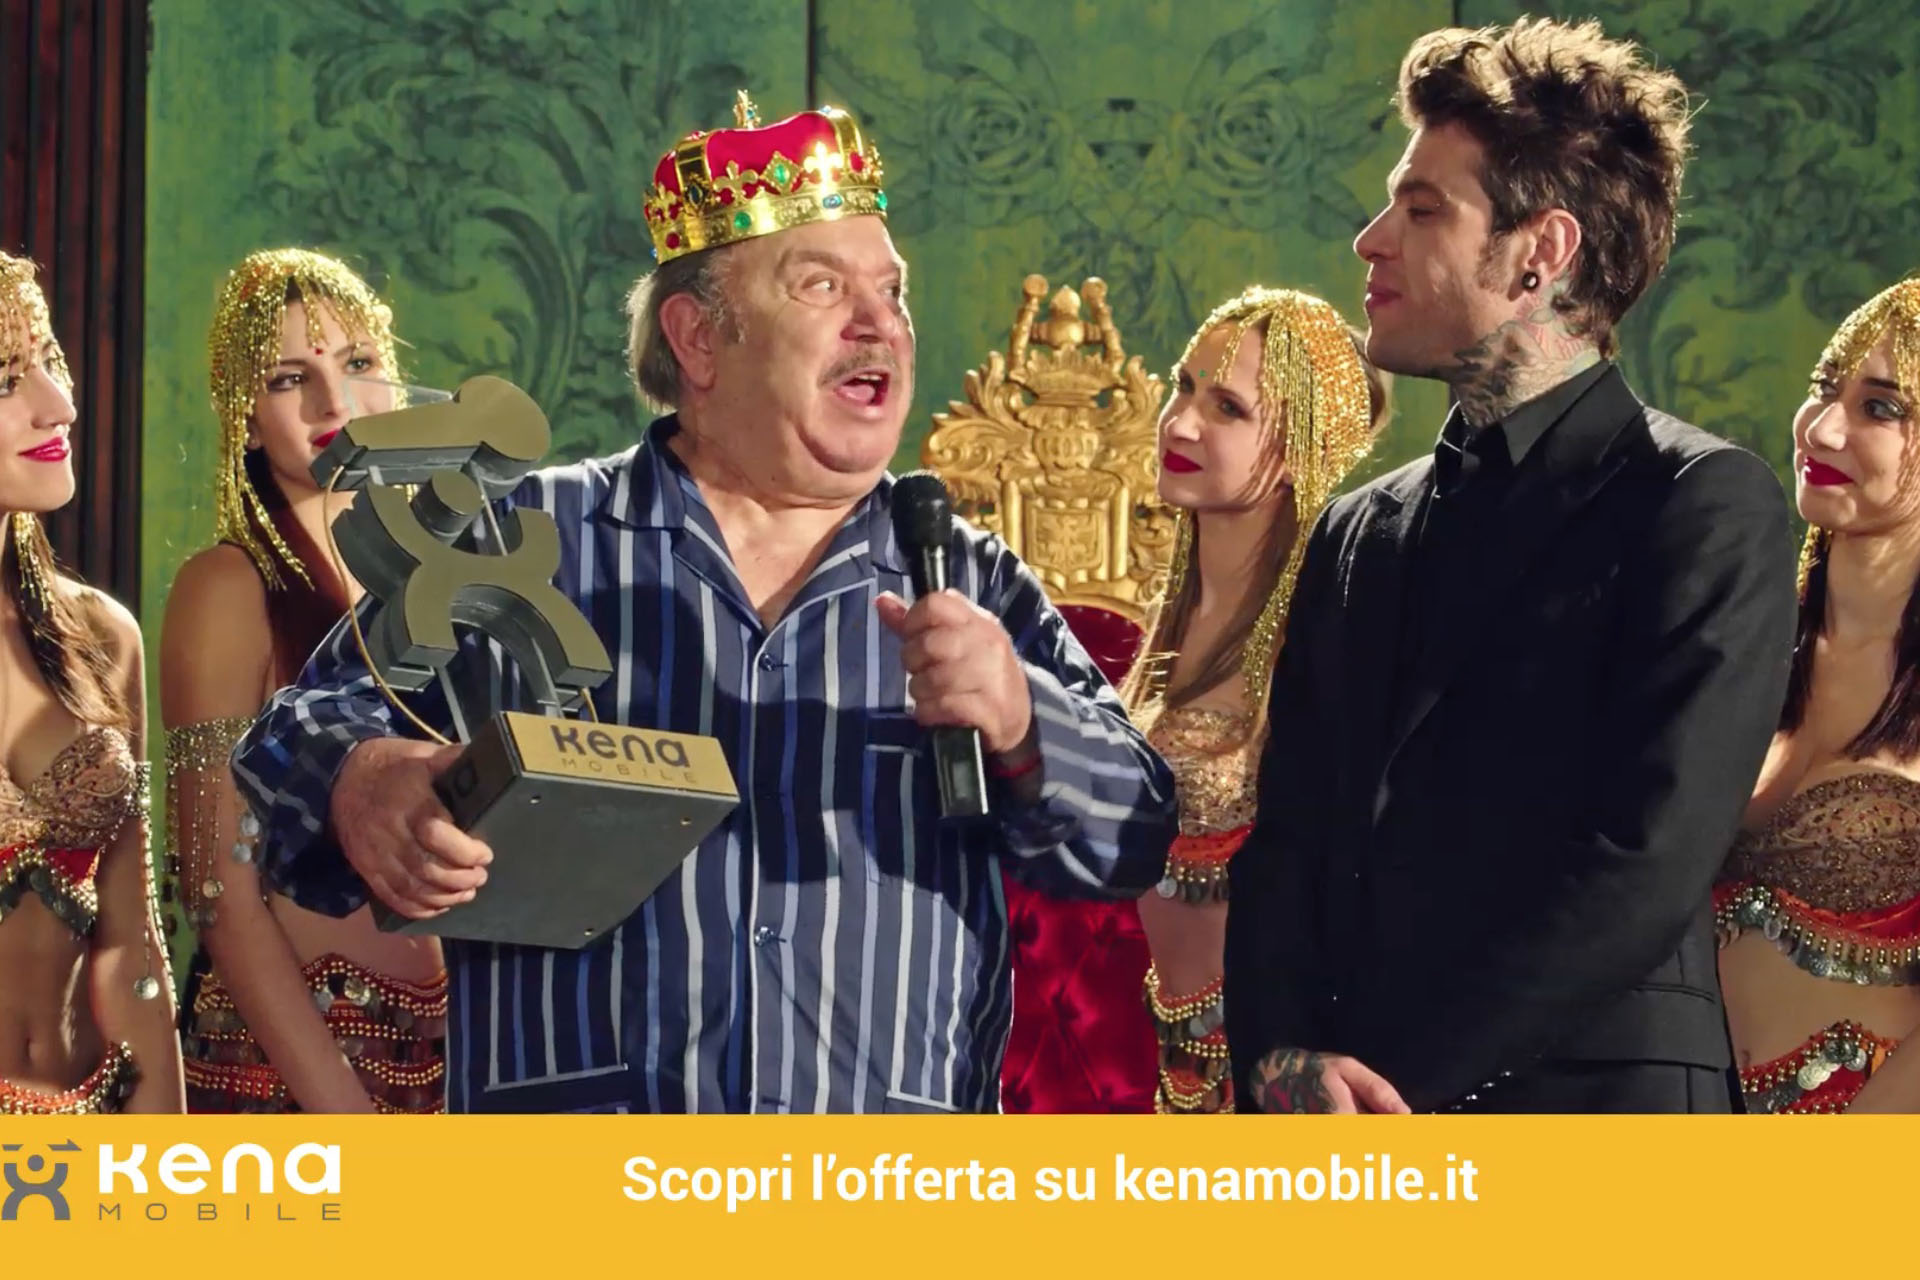 Kena Mobile, l’operatore virtuale di Tim, lancia una campagna pubblicitaria con protagonisti Fedez e Lino Banfi